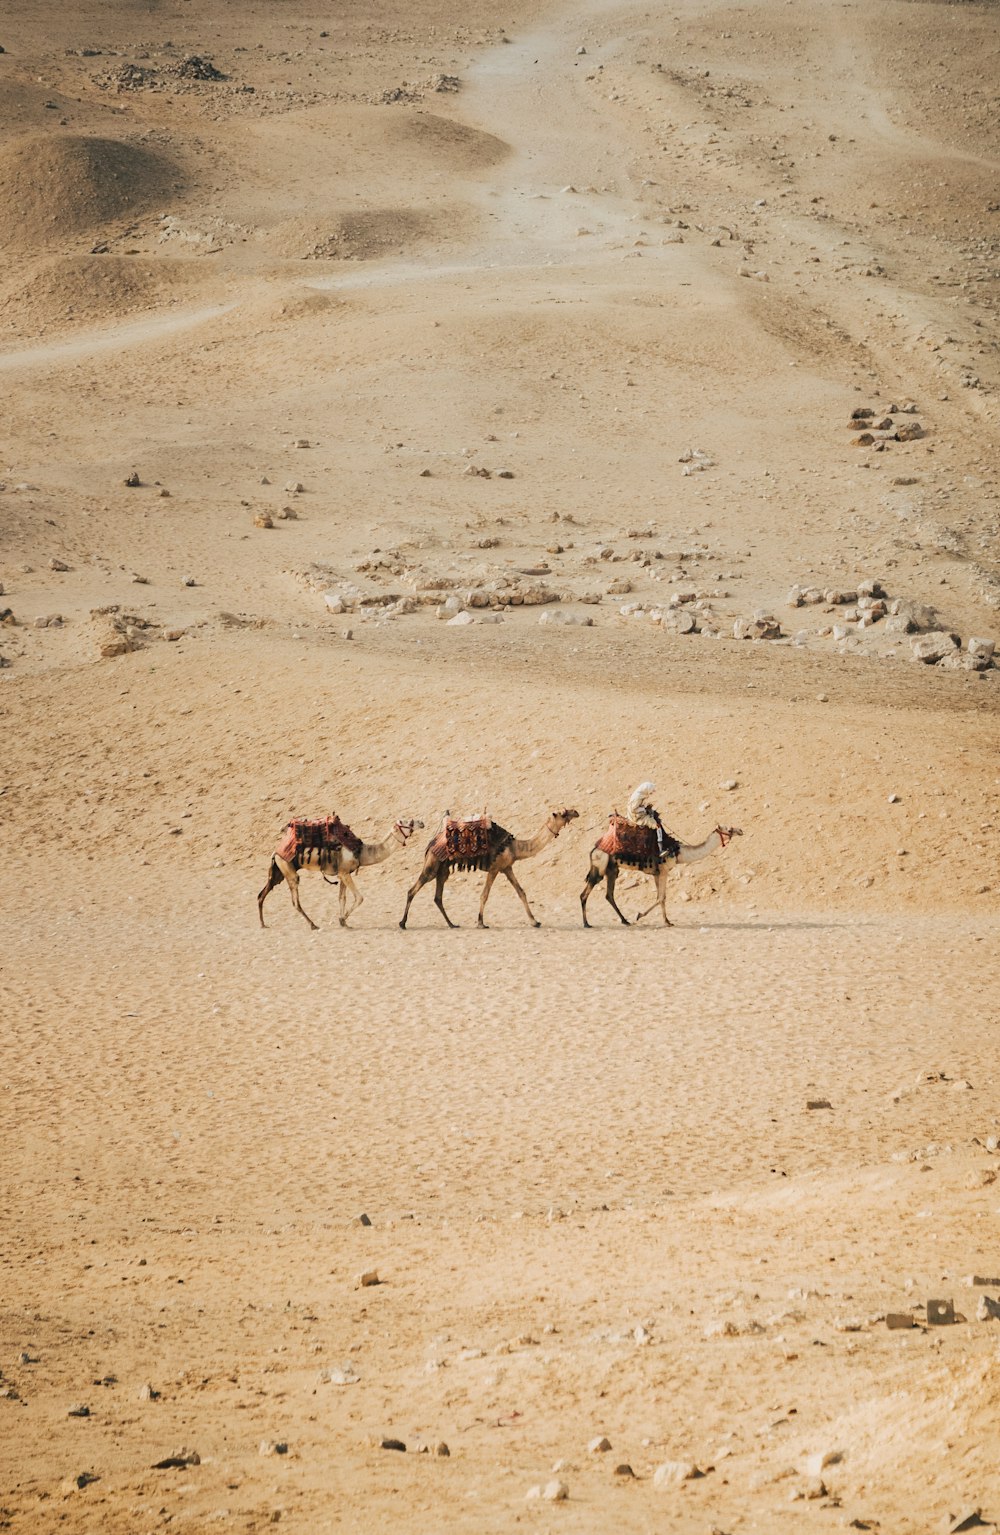 Un grupo de personas montando camellos a través de un desierto